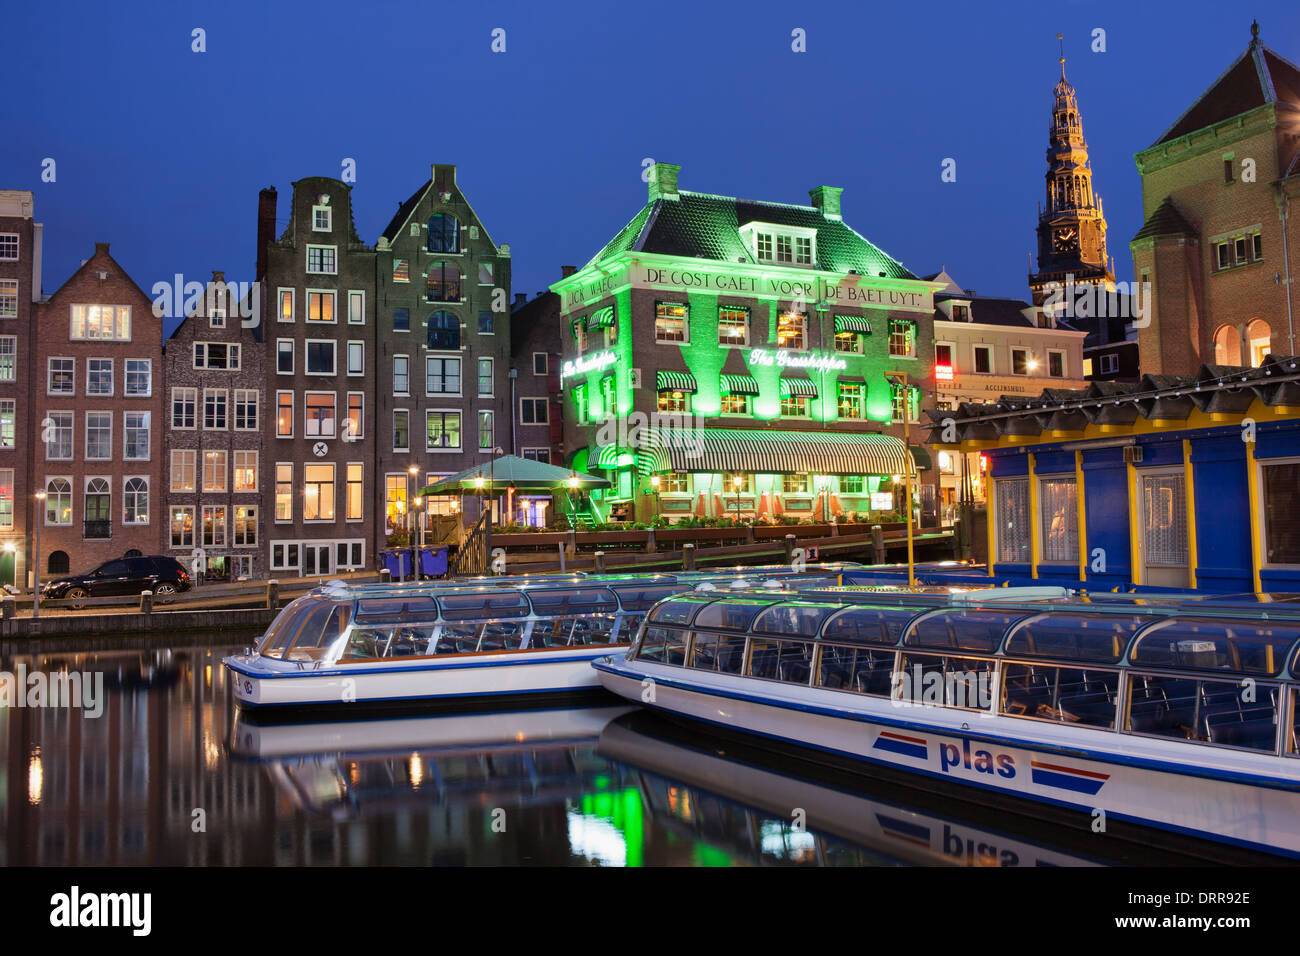 Vieille ville d'Amsterdam par nuit, les bateaux de croisière sur un canal historique et des maisons en terrasse dans le vieux centre de la ville. Banque D'Images